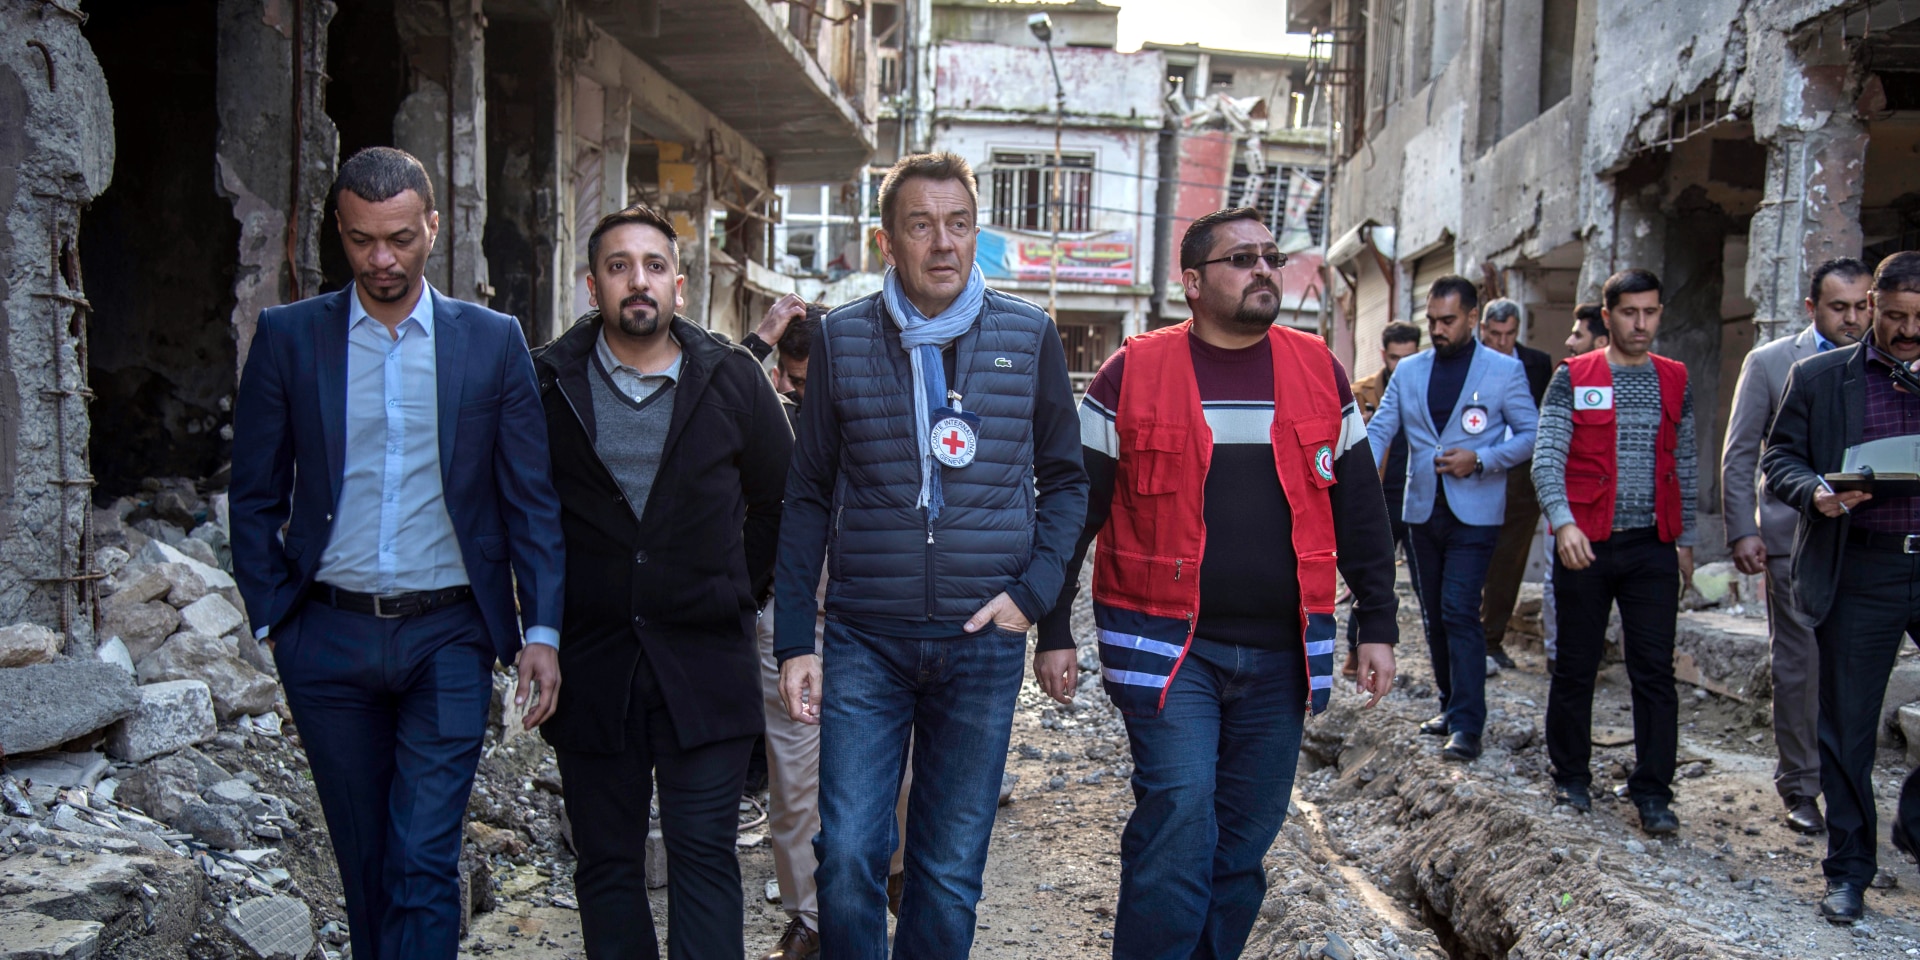 En compagnie de collaborateurs du CICR et du Croissant-Rouge, Peter Maurer visite un quartier portant les stigmates de la destruction.